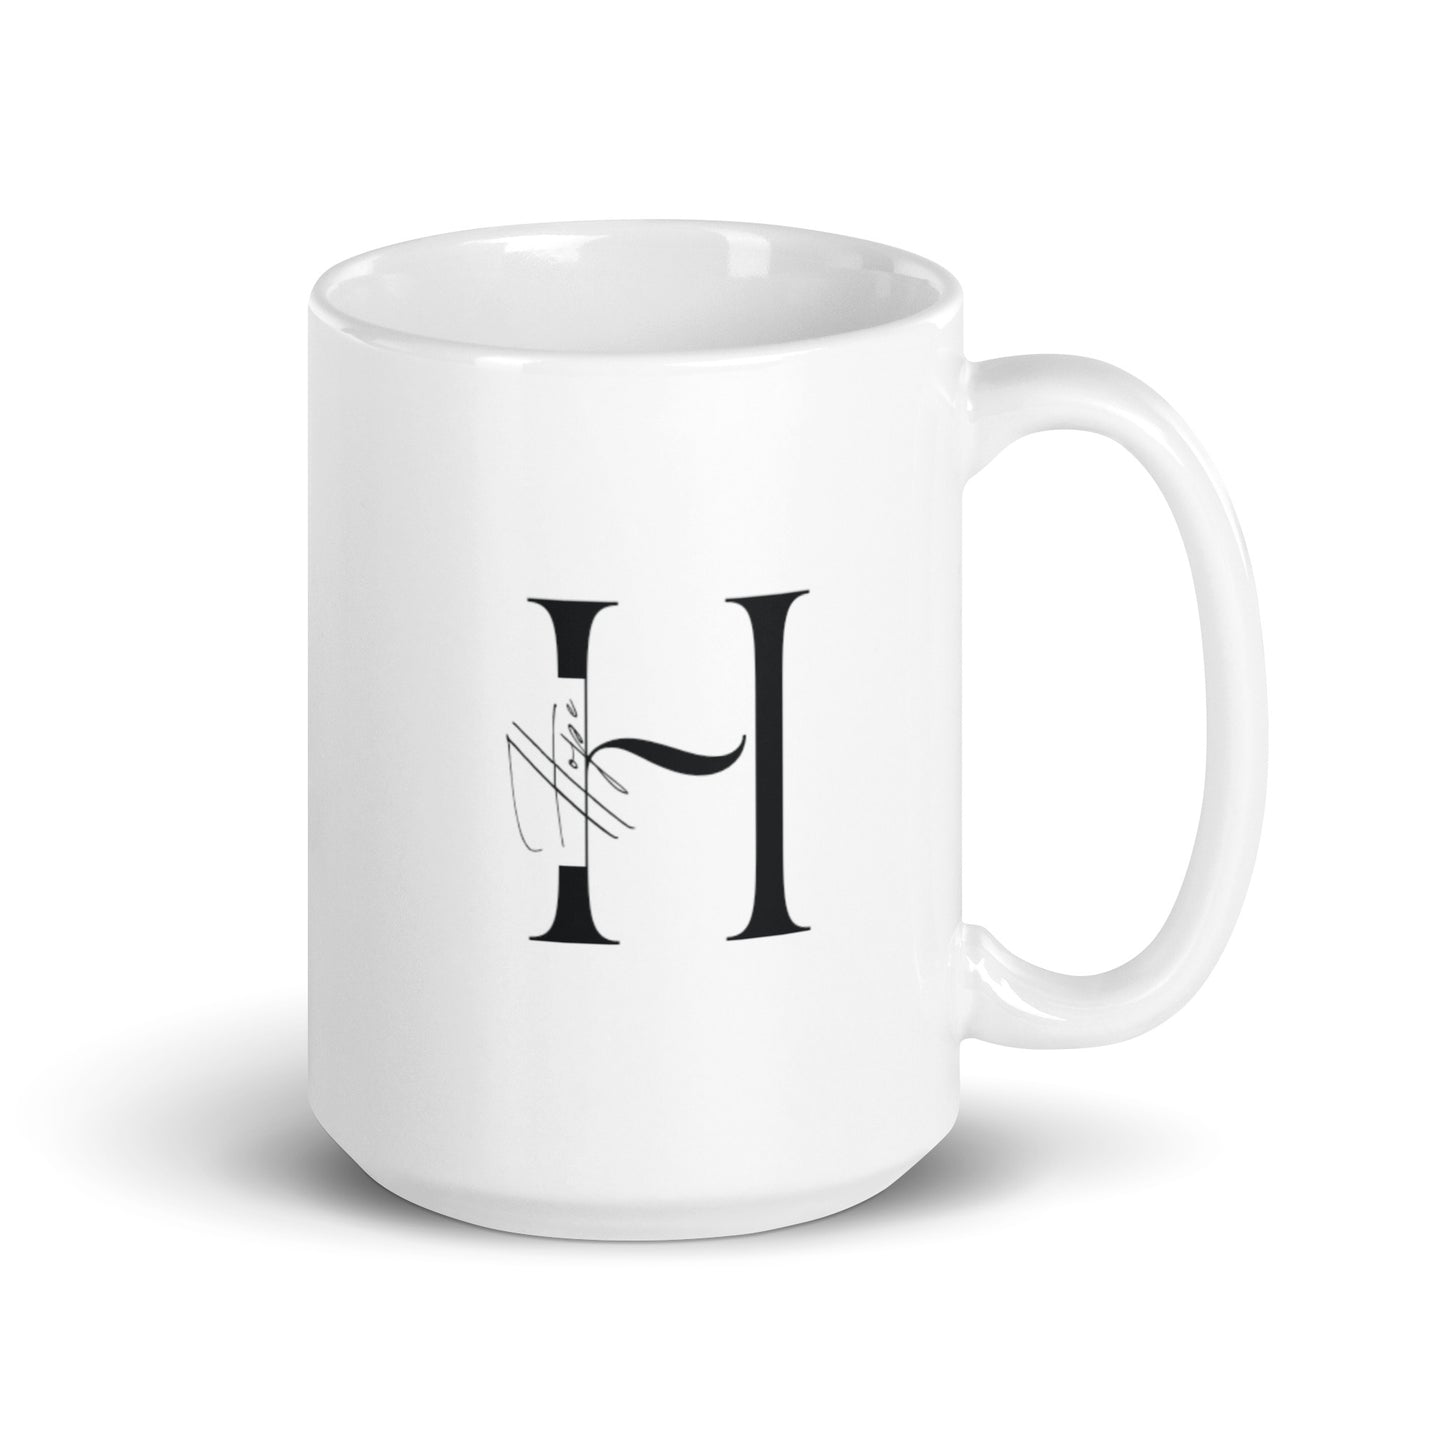 Hope White glossy mug